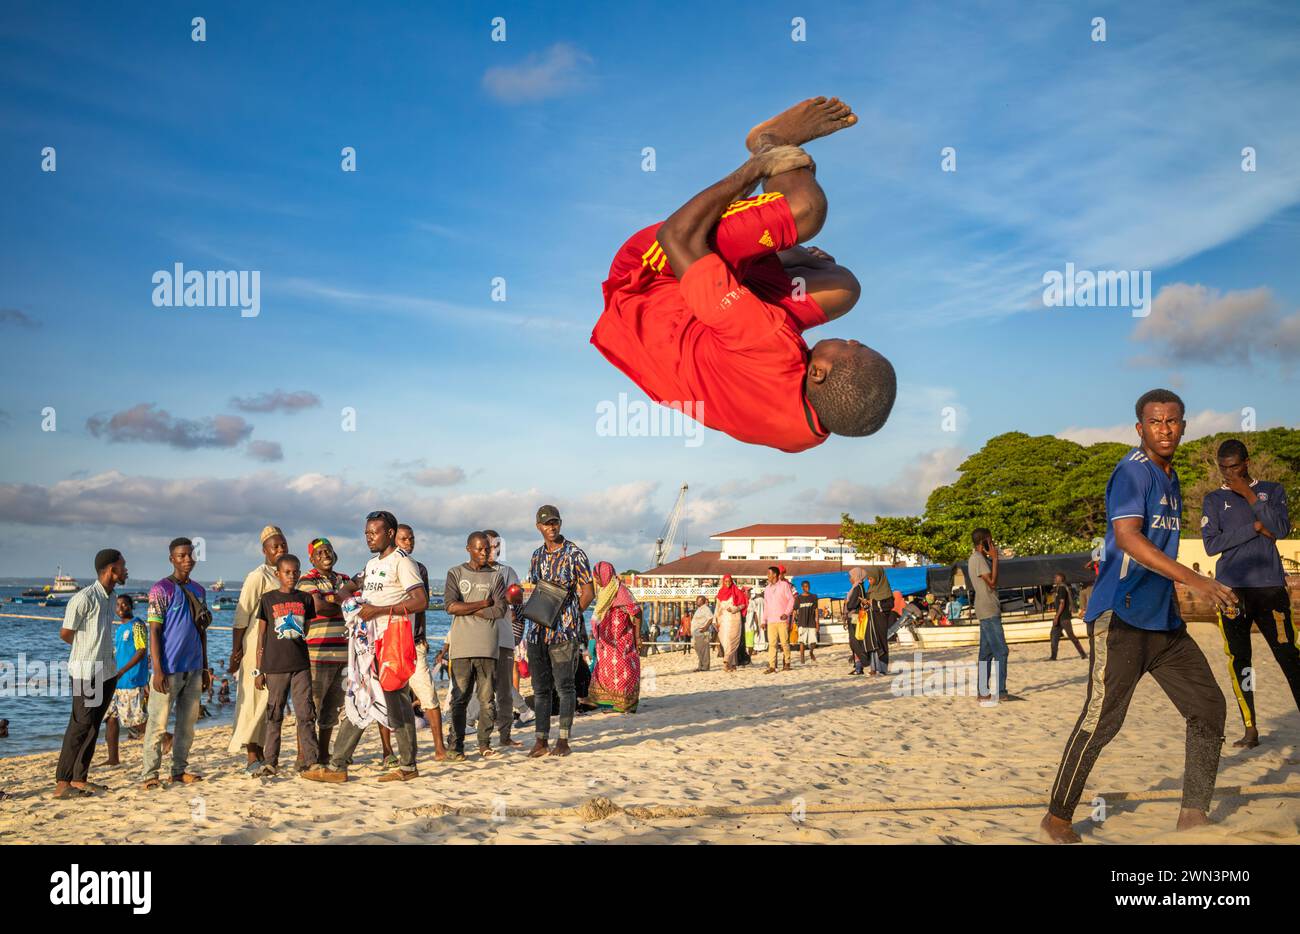 Un giovane esegue acrobazie nel tardo pomeriggio sulla spiaggia di Stone Town, Zanzibar, Tanzania. Foto Stock